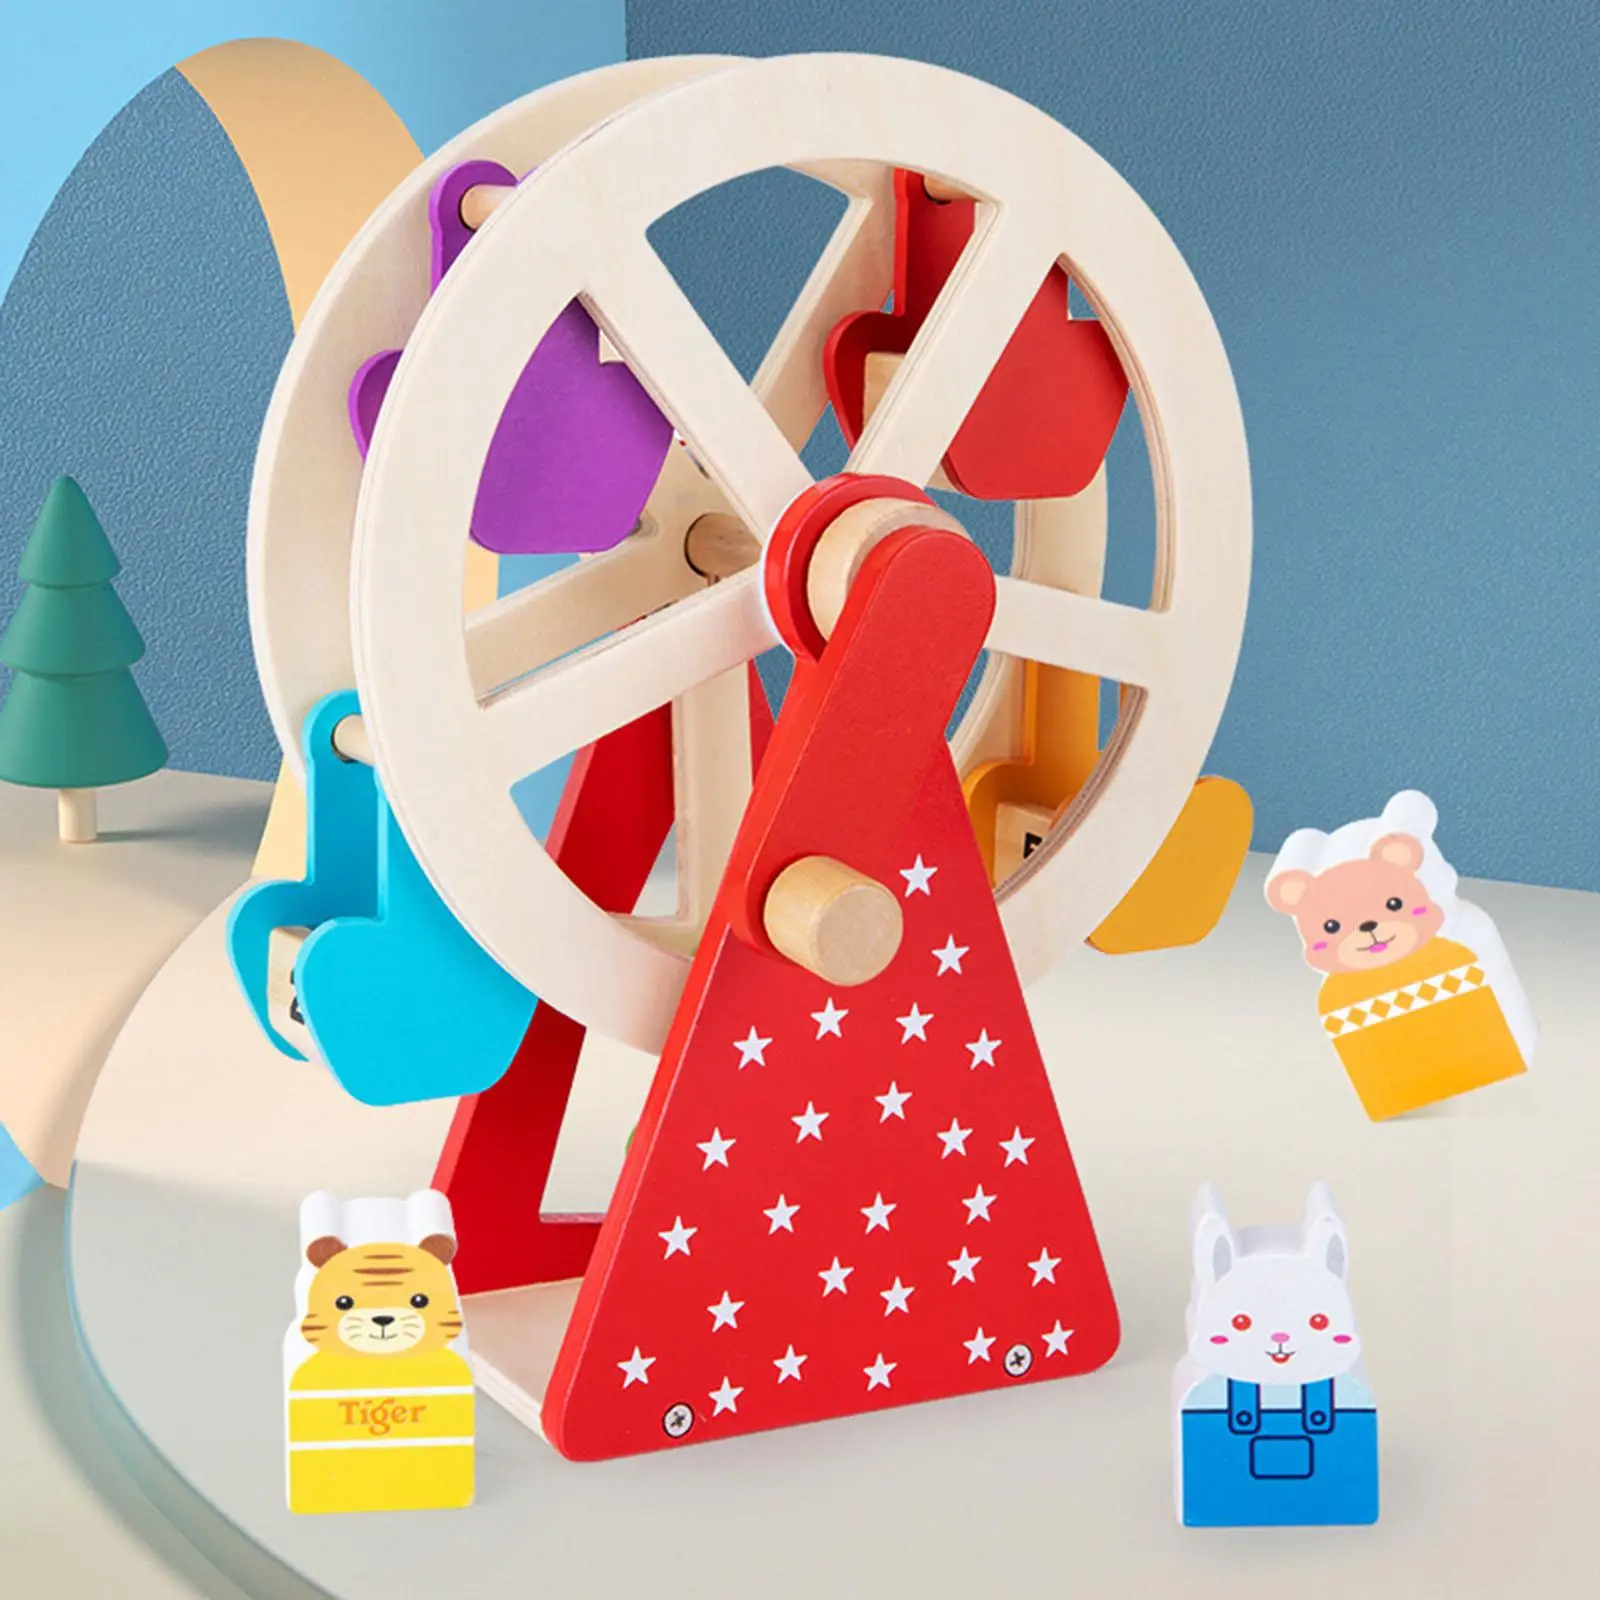 

Детские игрушки с вращающимся колесом, Интерактивная вращающаяся игрушка «сделай сам» для родителей и детей, красочная модель пазла для ярлыков для детей 3 + лет